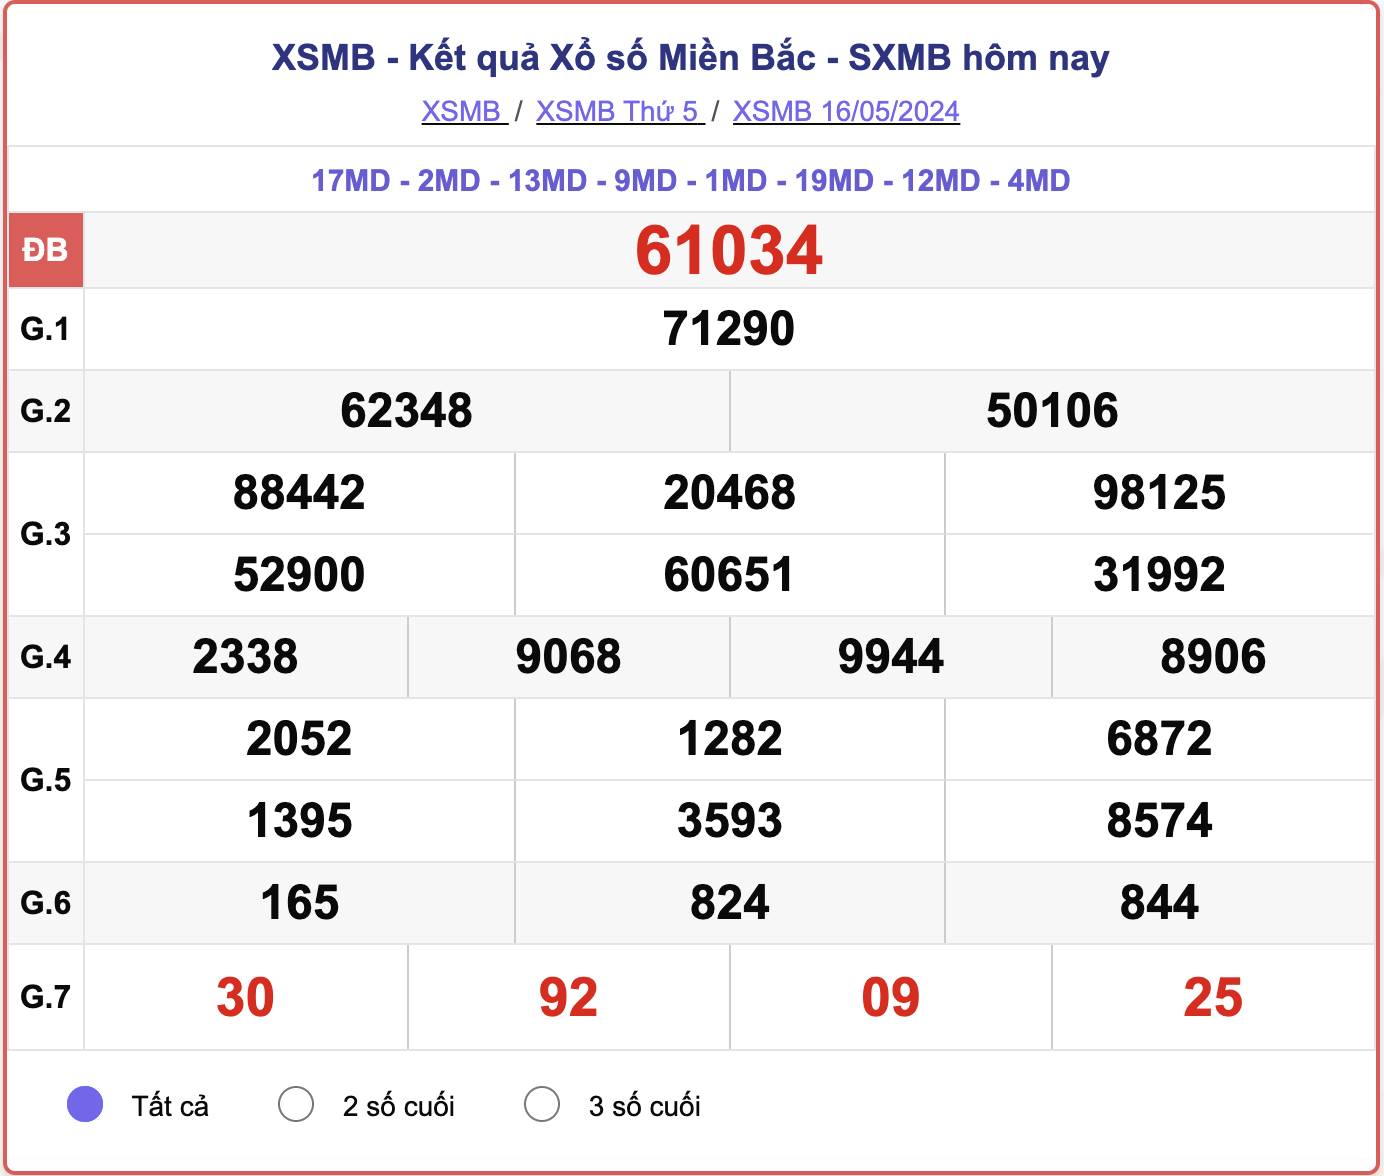 XSMB 21/5 - Kết quả xổ số miền Bắc hôm nay 21/5/2024 - KQXSMB 21/5- Ảnh 5.